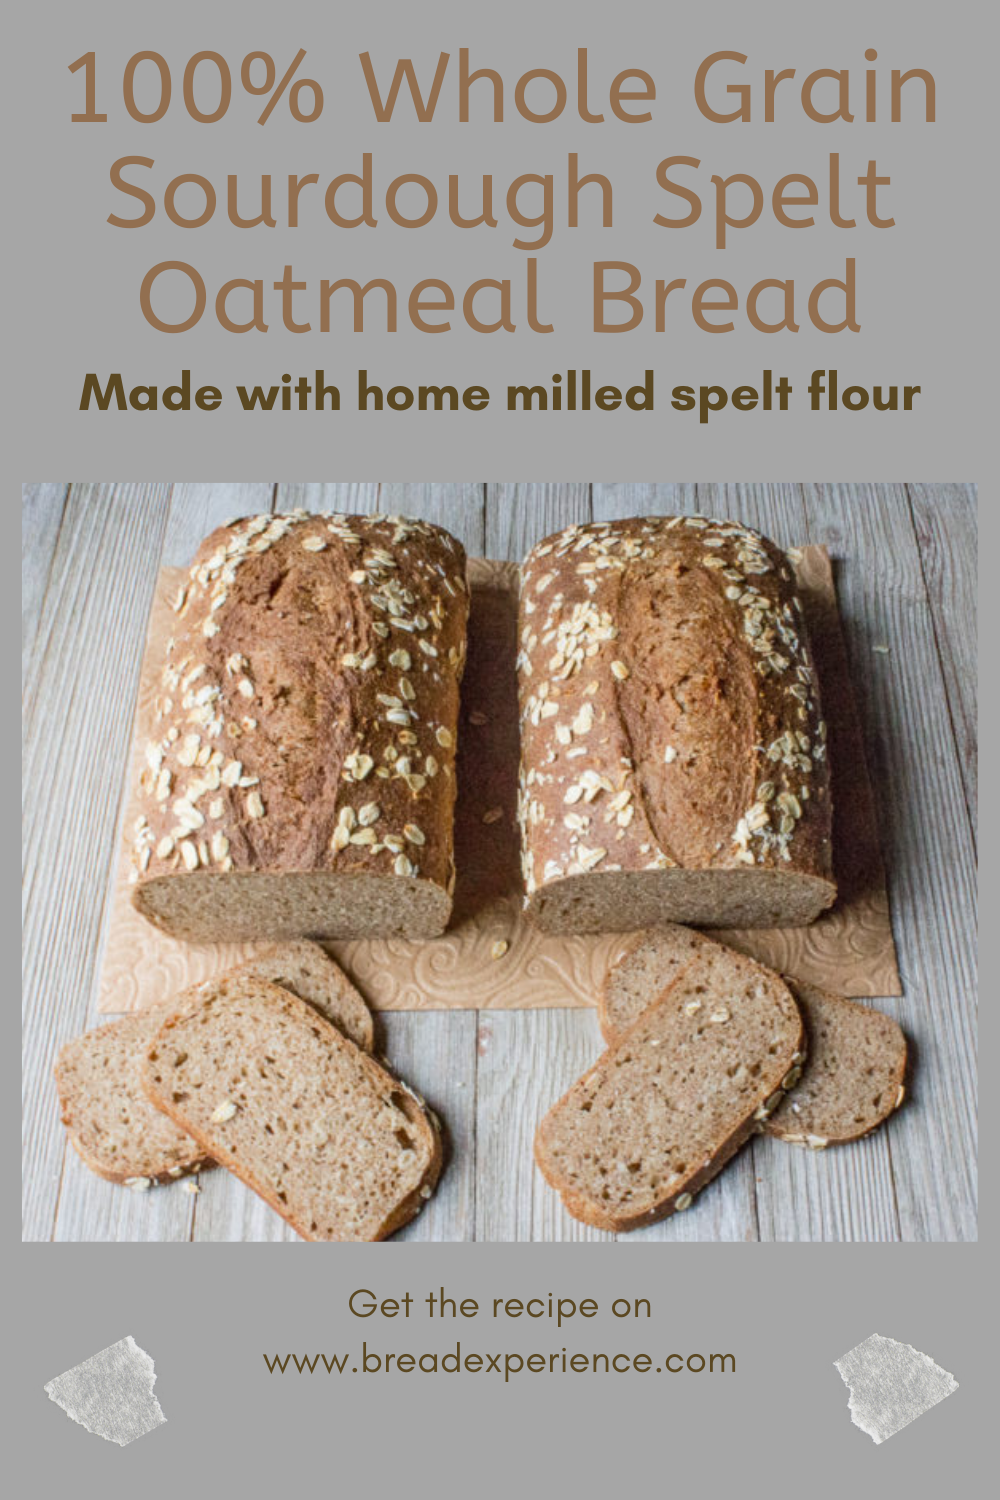 Whole Grain Sourdough Spelt Oatmeal Bread